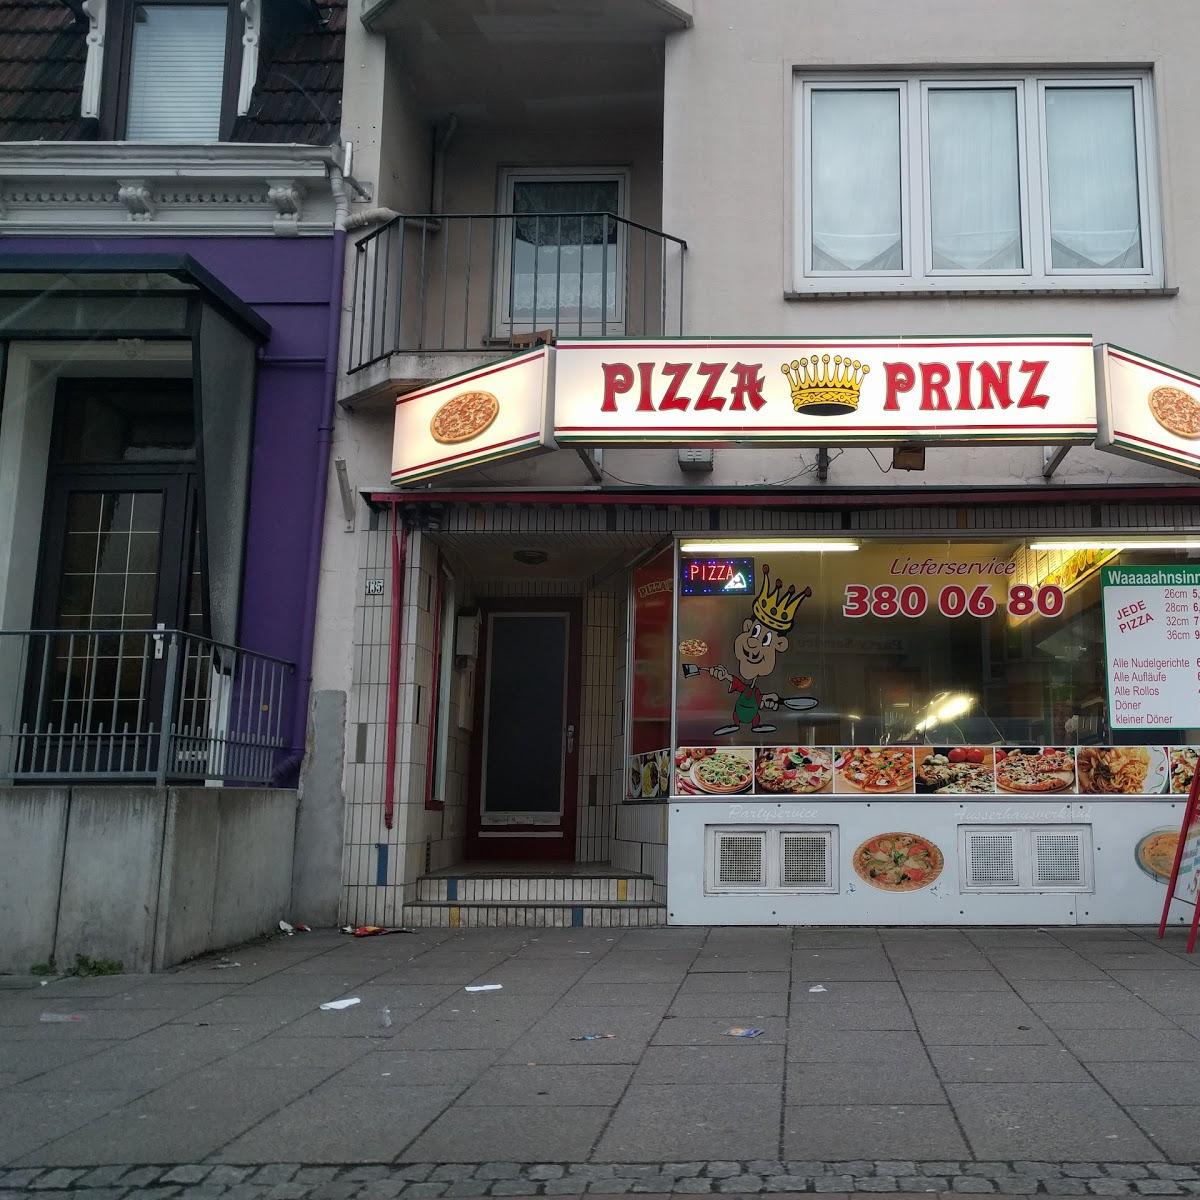 Restaurant "Pizza Prinz" in Bremen